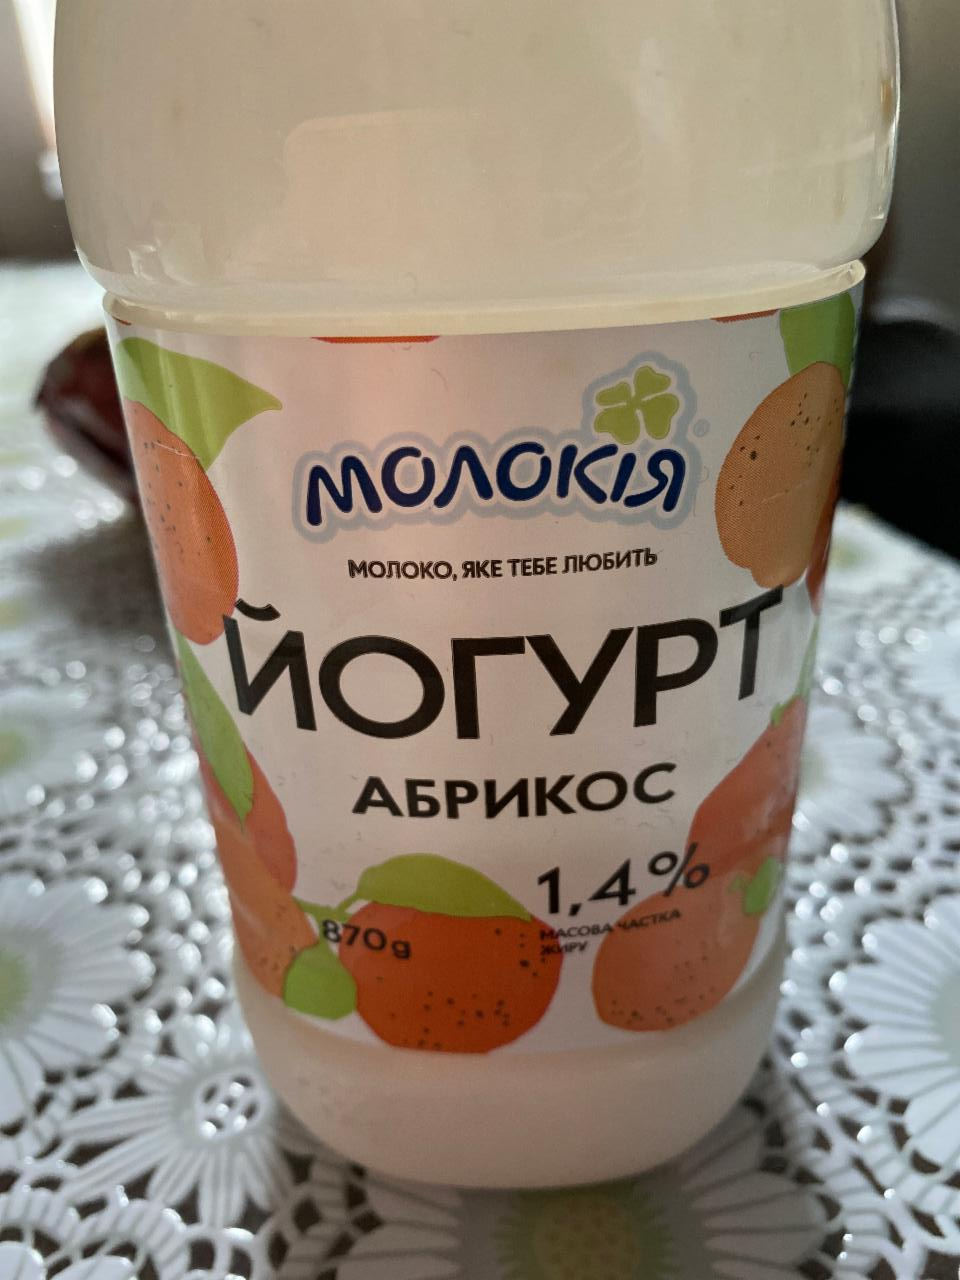 Фото - йогурт 1.4% питьевой абрикос Молокия